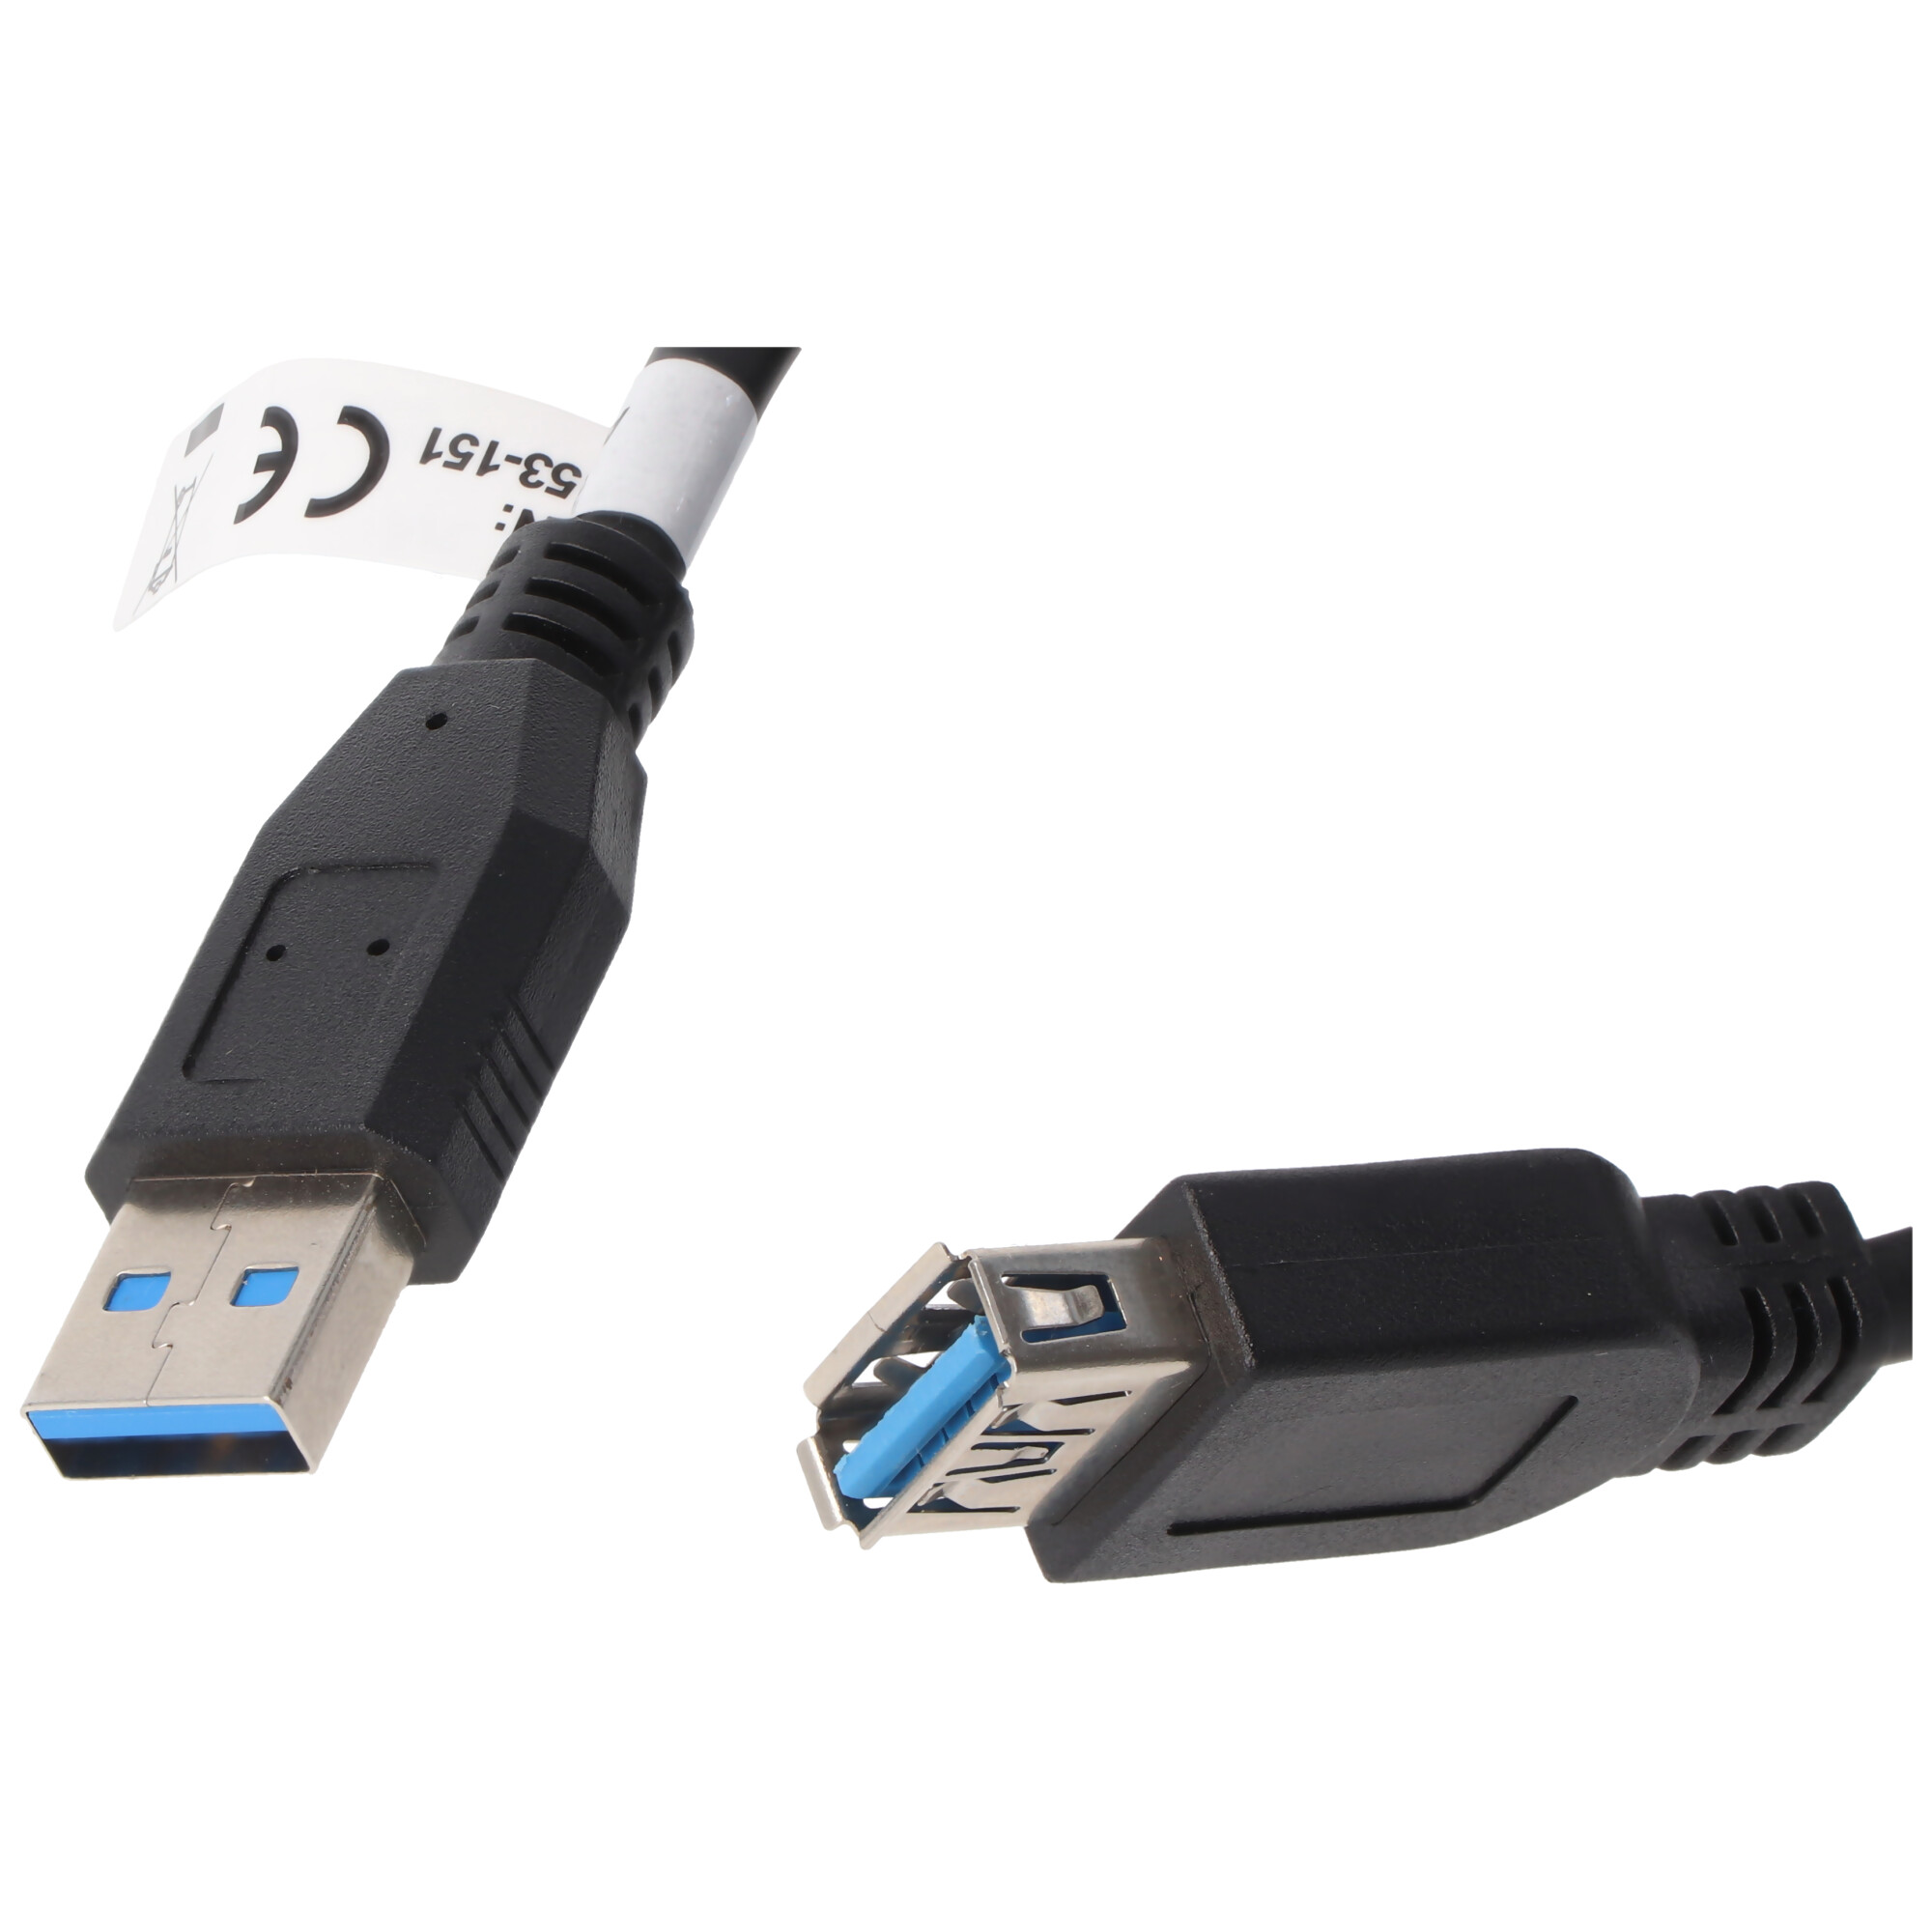 USB 3.0 SuperSpeed Verlängerungskabel Schwarz Gesamtlänge 3 Meter deutlich schneller als USB 2.0